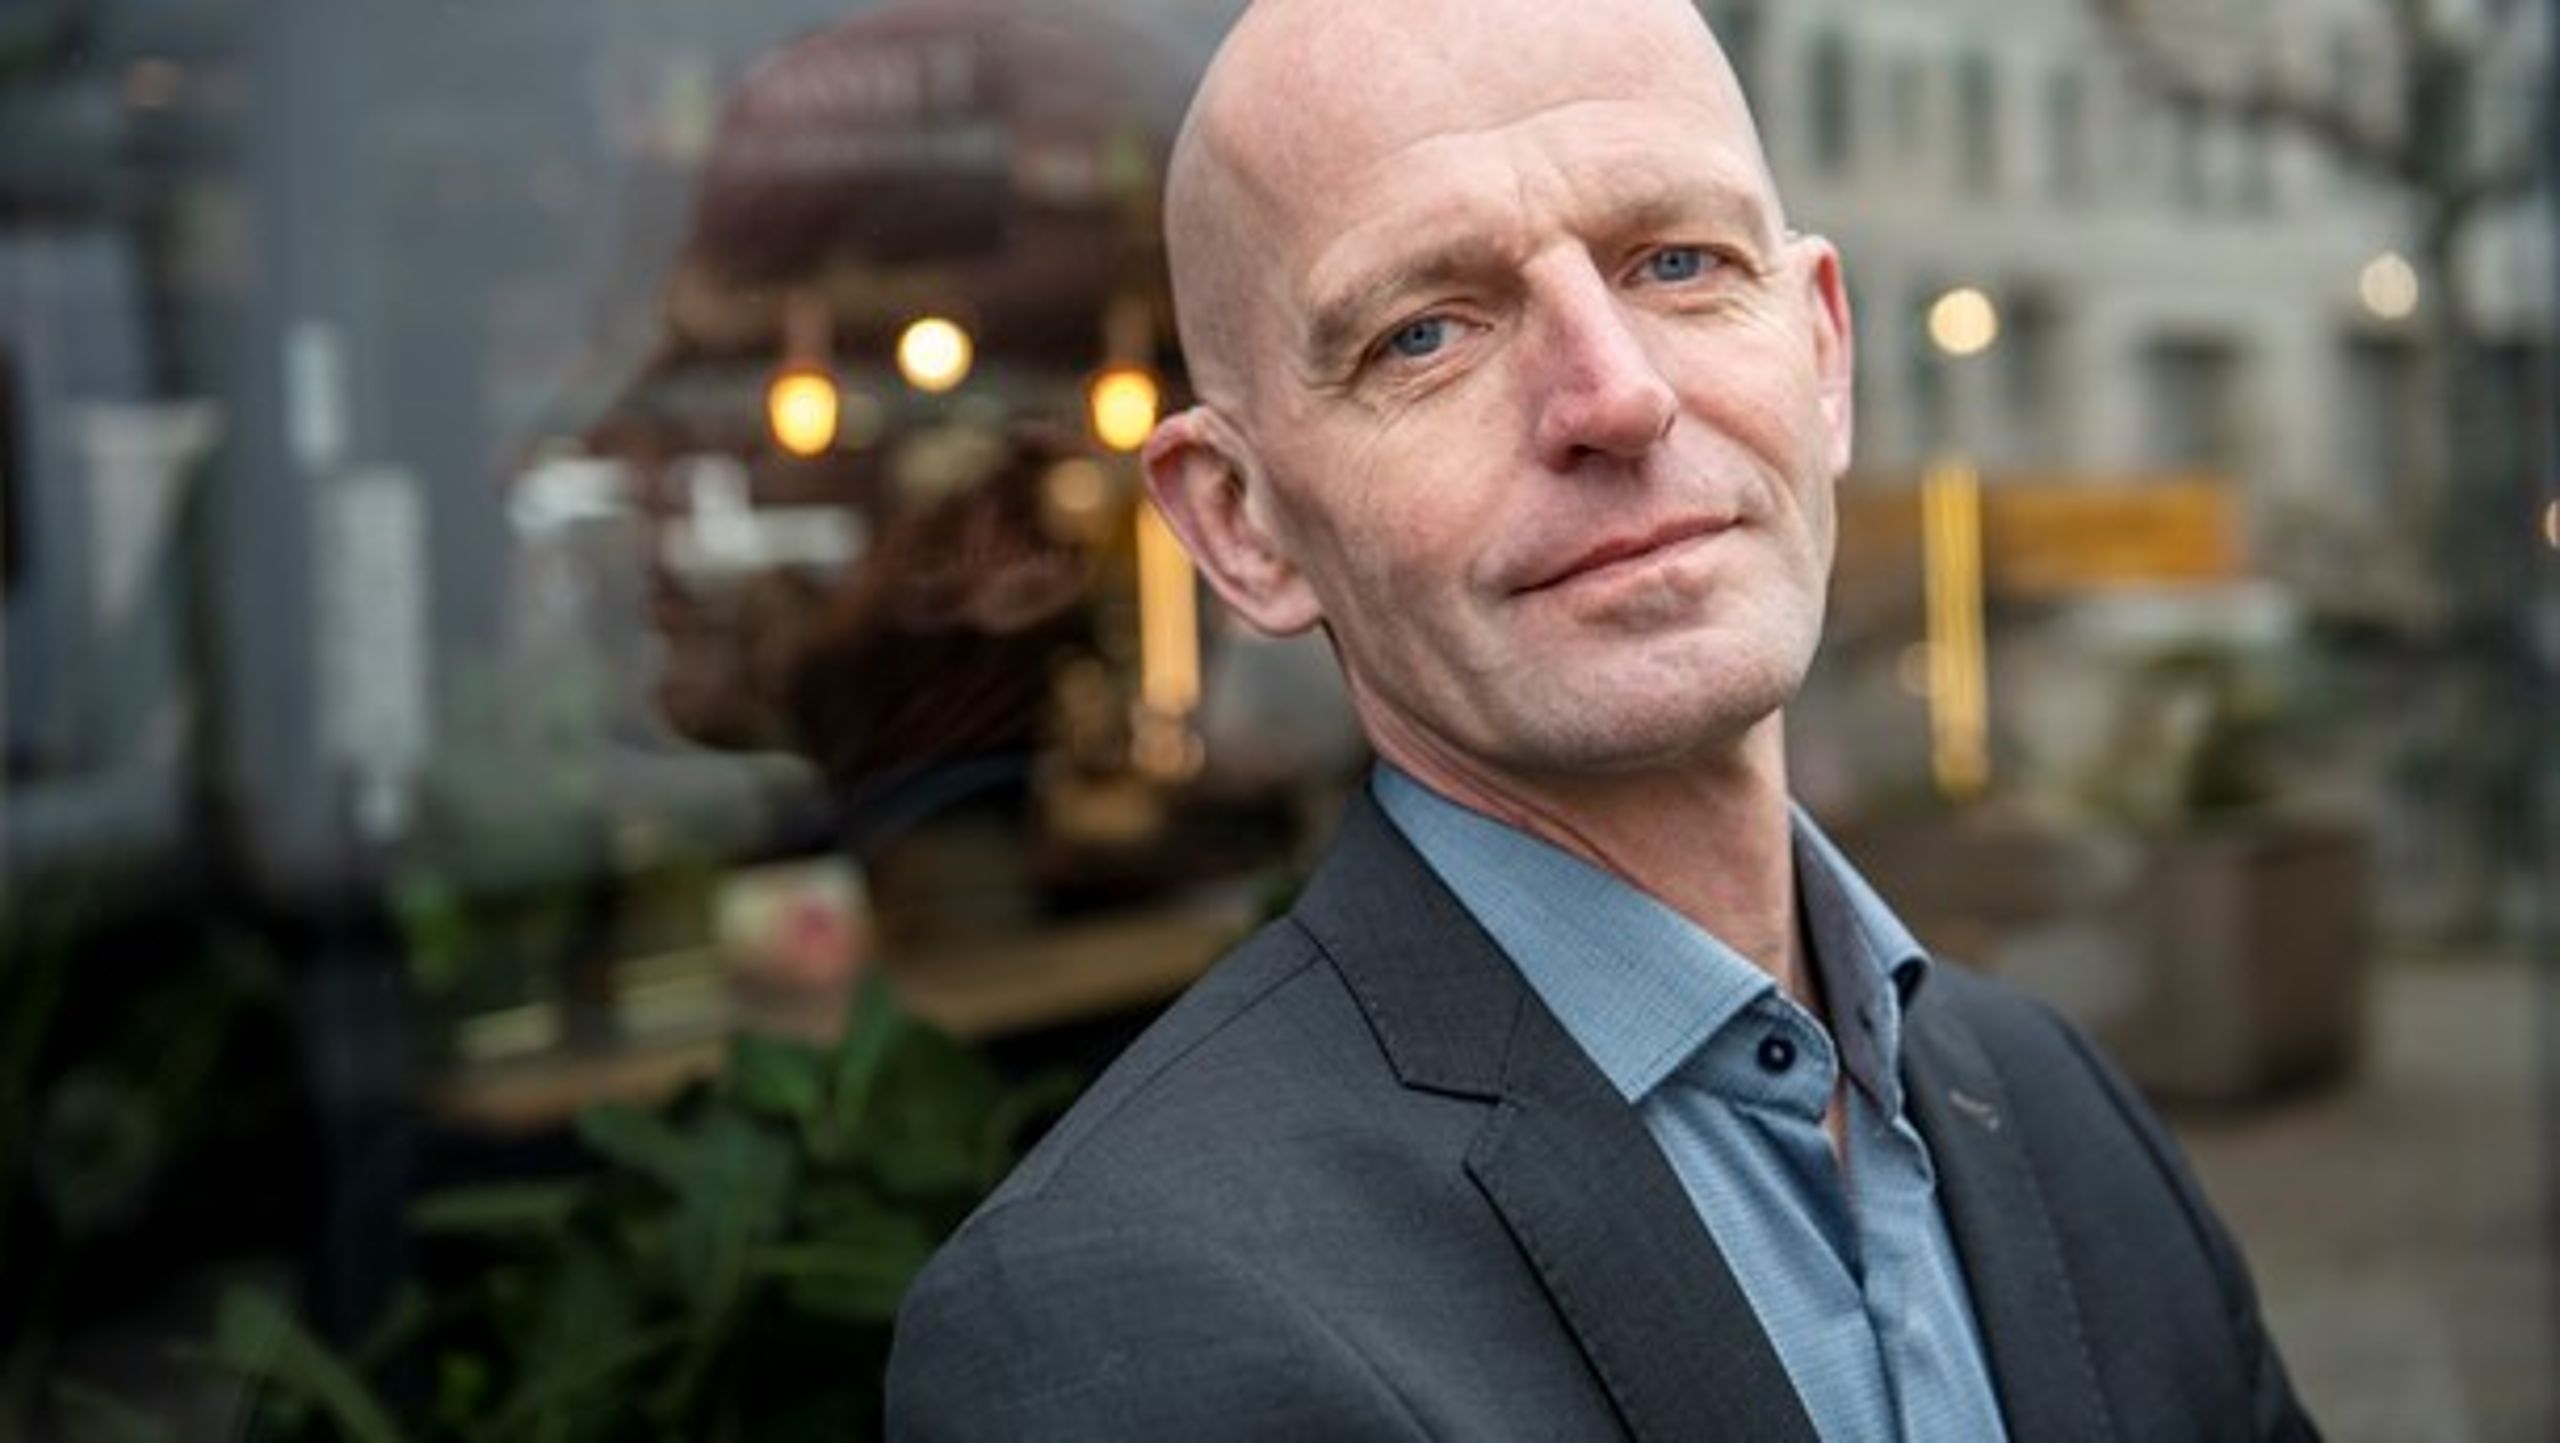 Lars Werge var først næstformand og siden formand for Dansk Journalistforbund fra 2011-2019, men valgte at gå af i utide på grund af manglende opbakning i forbundets hovedbestyrelse. Nu skal han pleje de politiske interesser for medievirksomhederne i Dansk Erhverv.